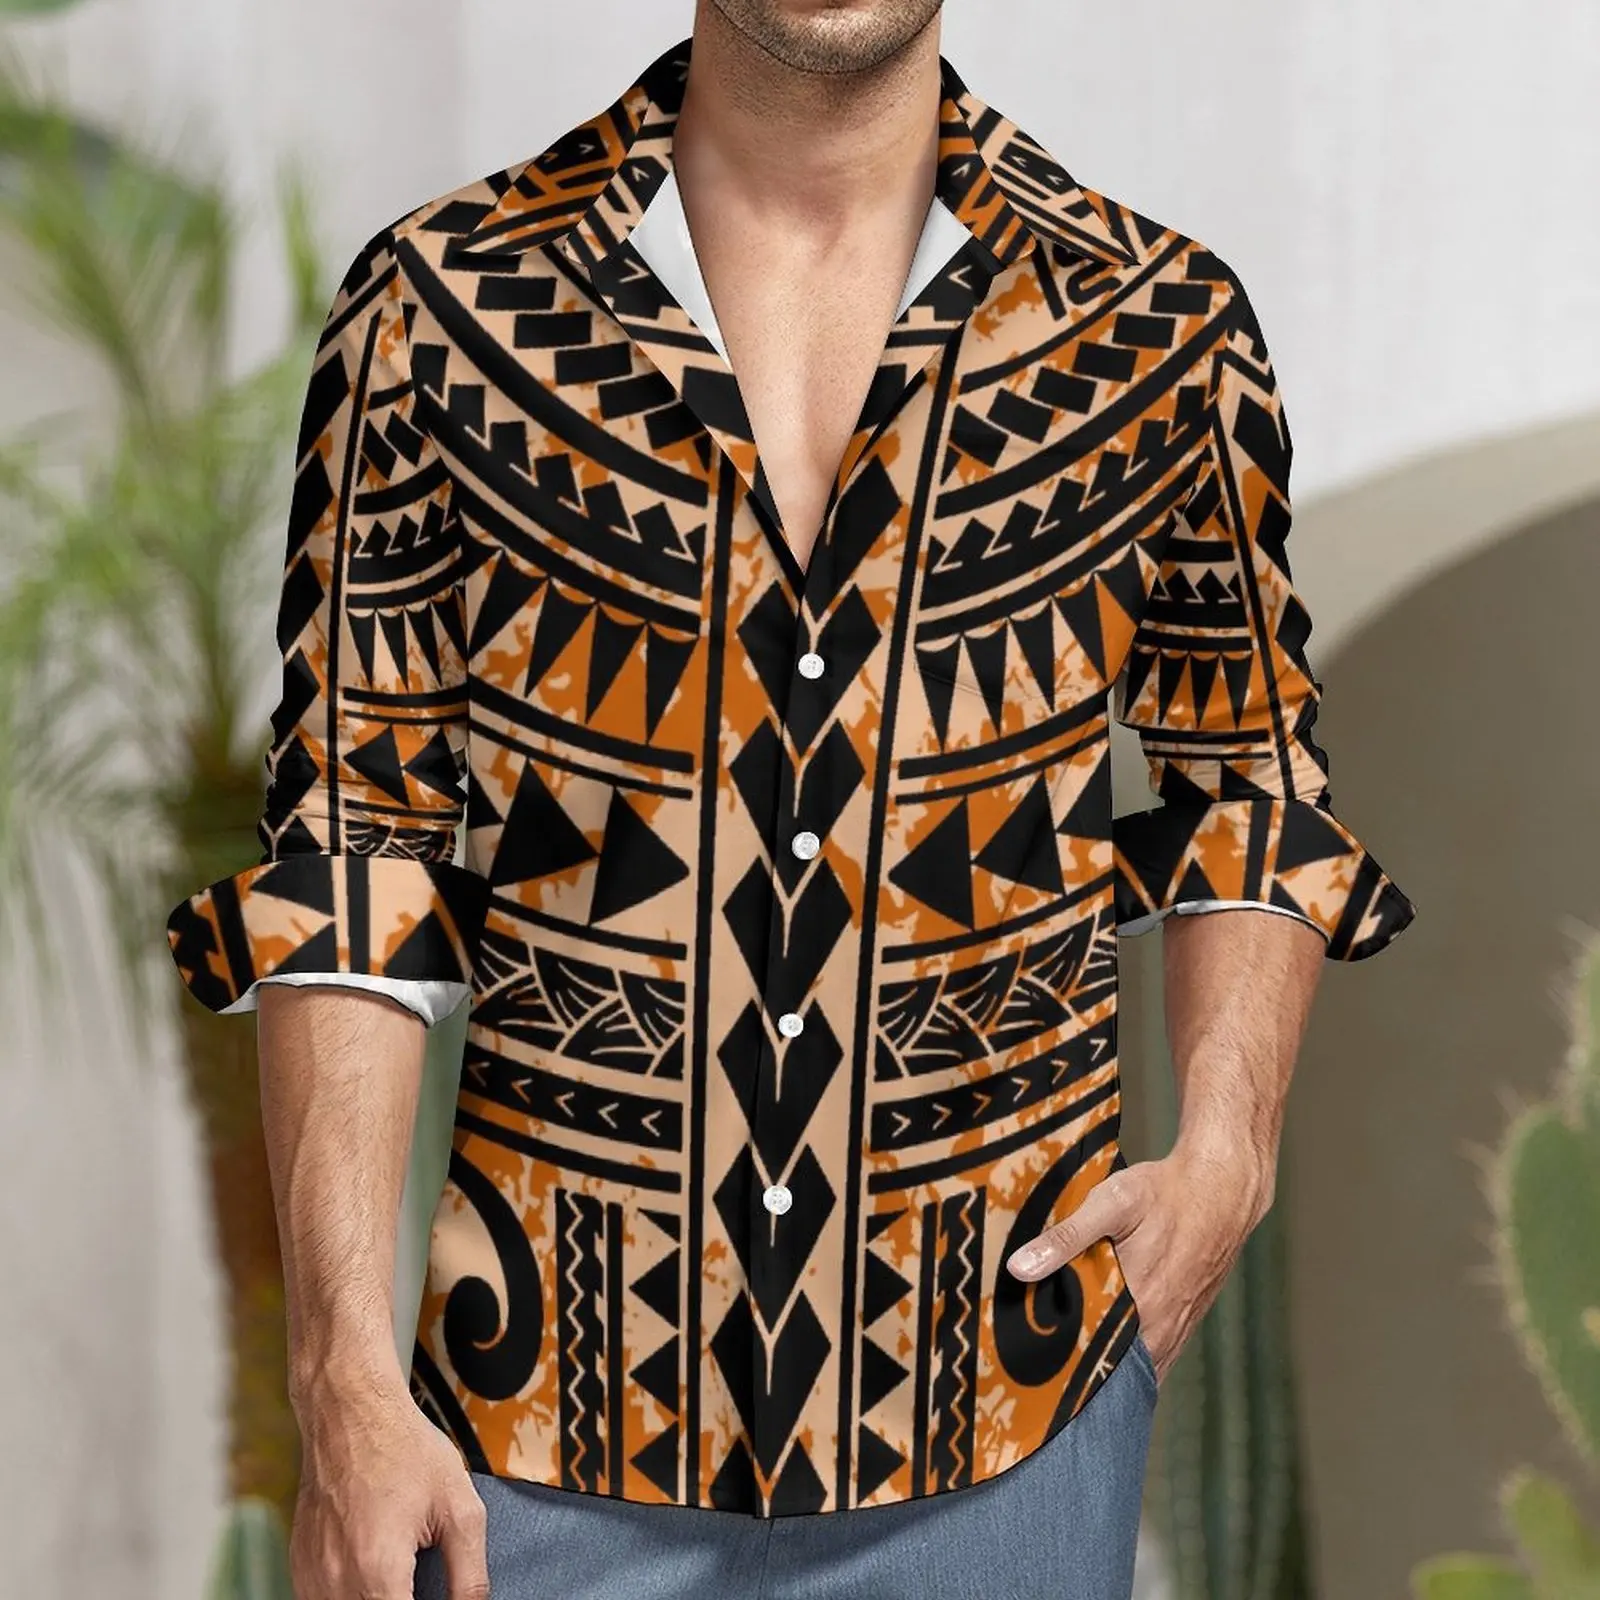 싼 polynesian 큰 사이즈 남성 셔츠 레트로 tatau 부족 디자인 사모아 셔츠 캐주얼 긴 소매 탑 섬 정장 셔츠